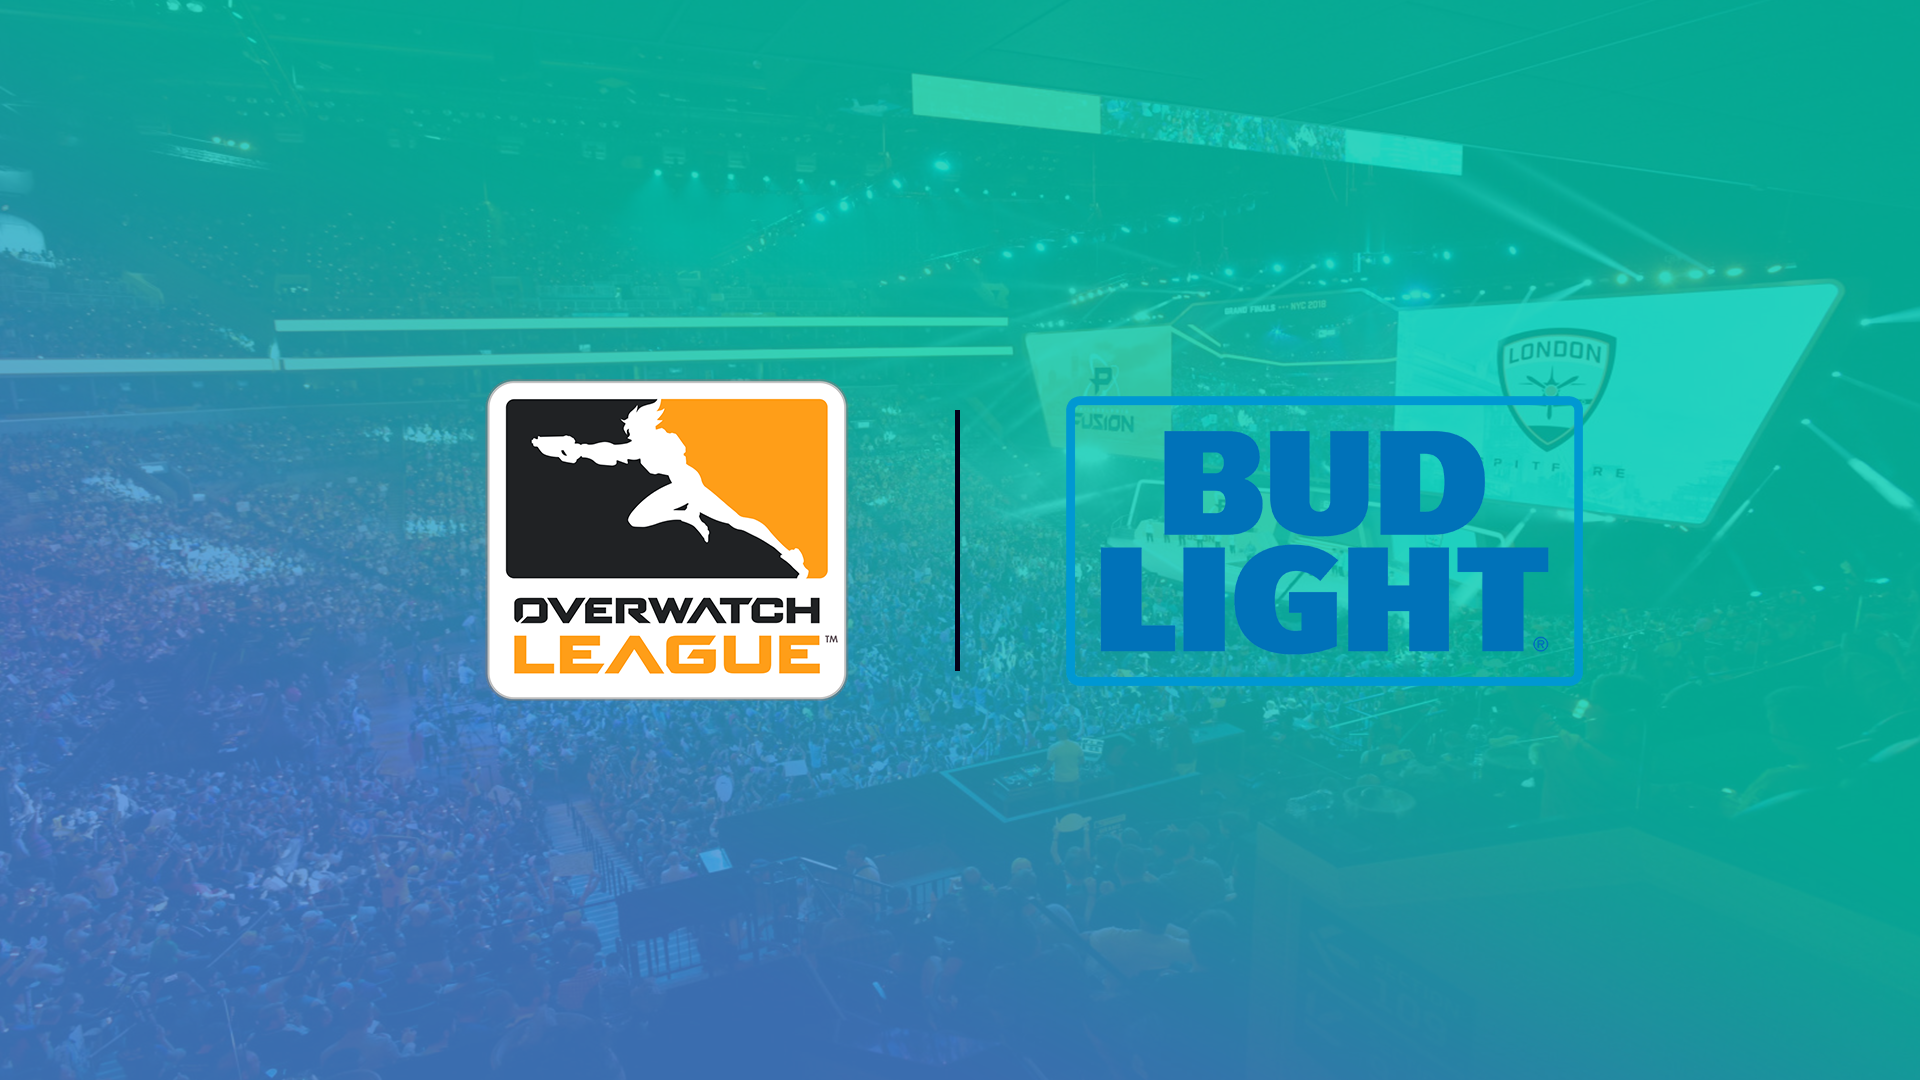 Bud Light Overwatch League - HD Wallpaper 